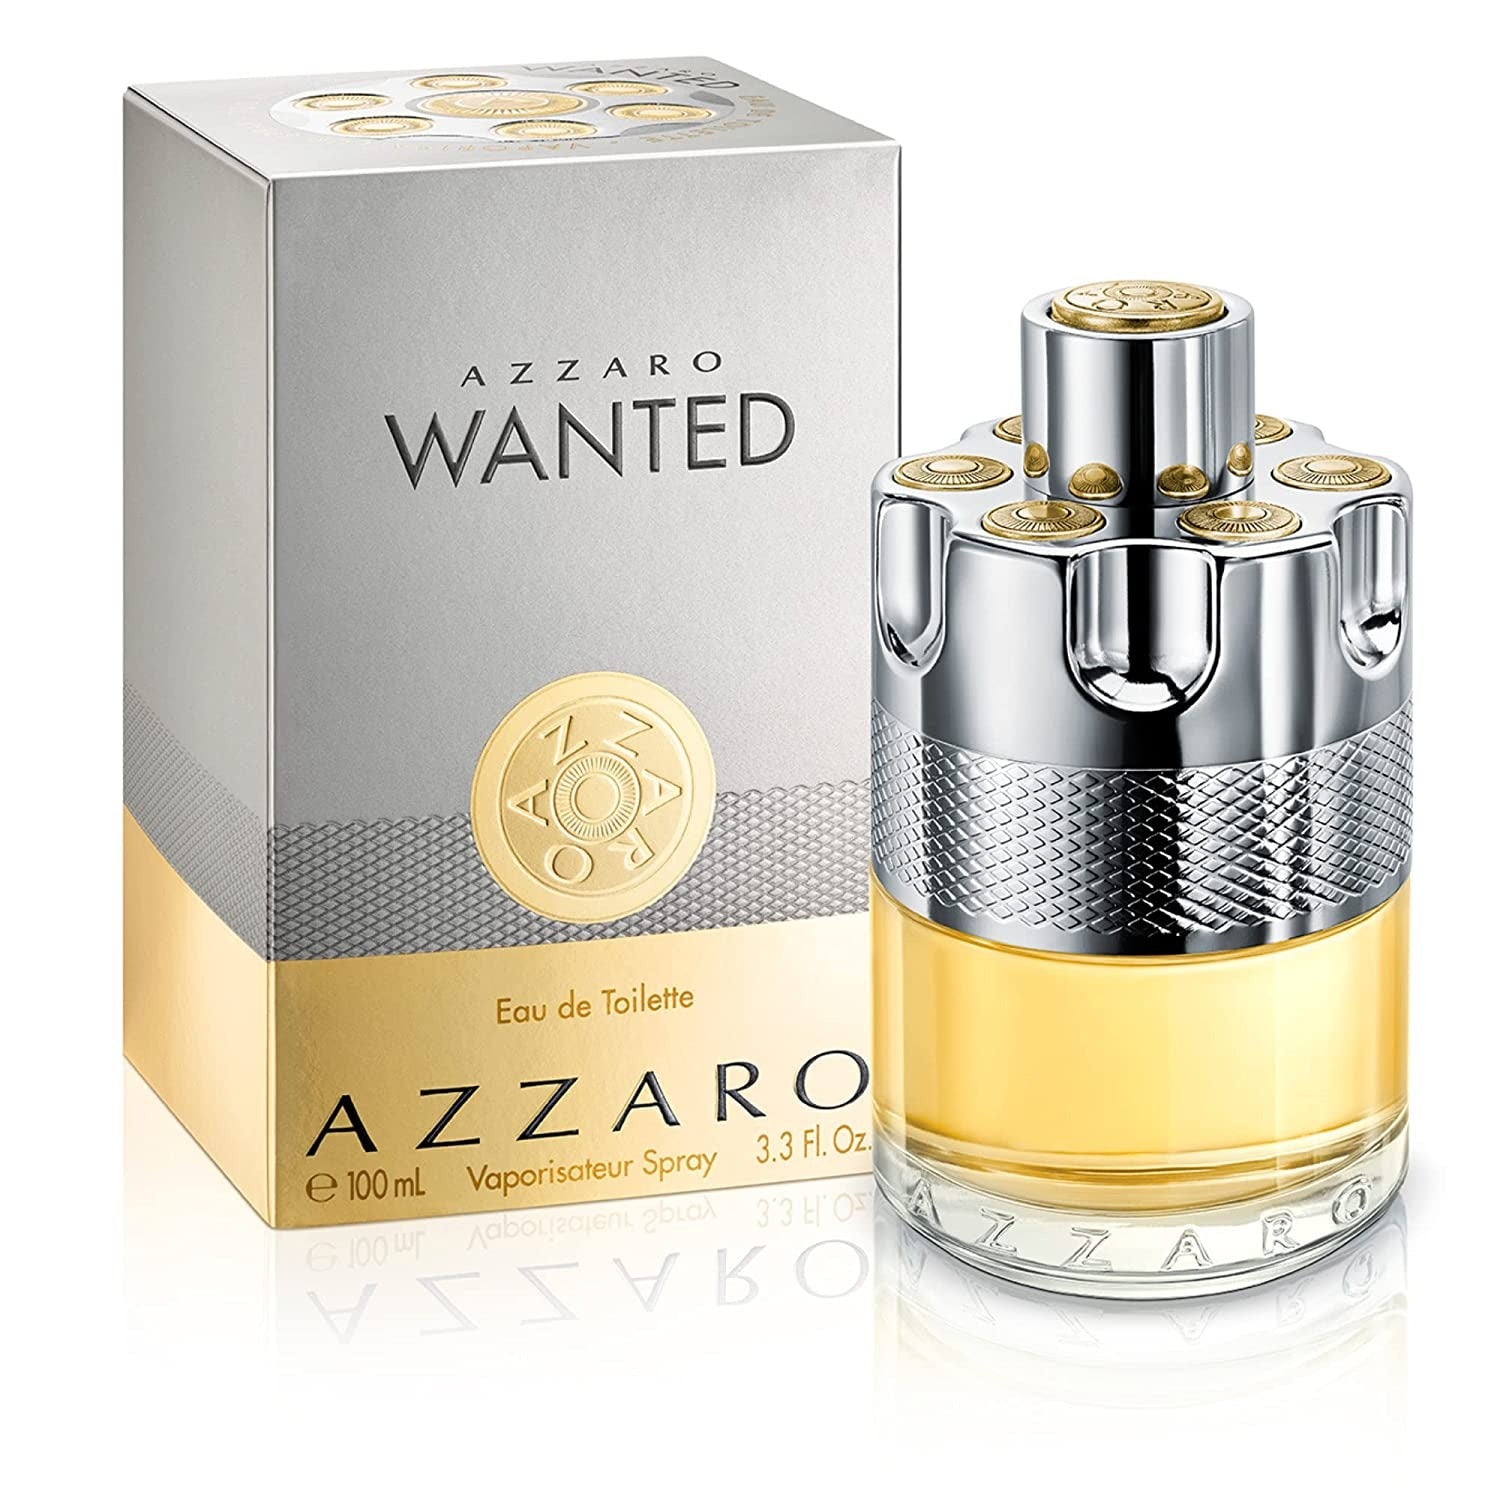 Azzaro Wanted by Azzaro 3.3 oz EDT Spray for Men